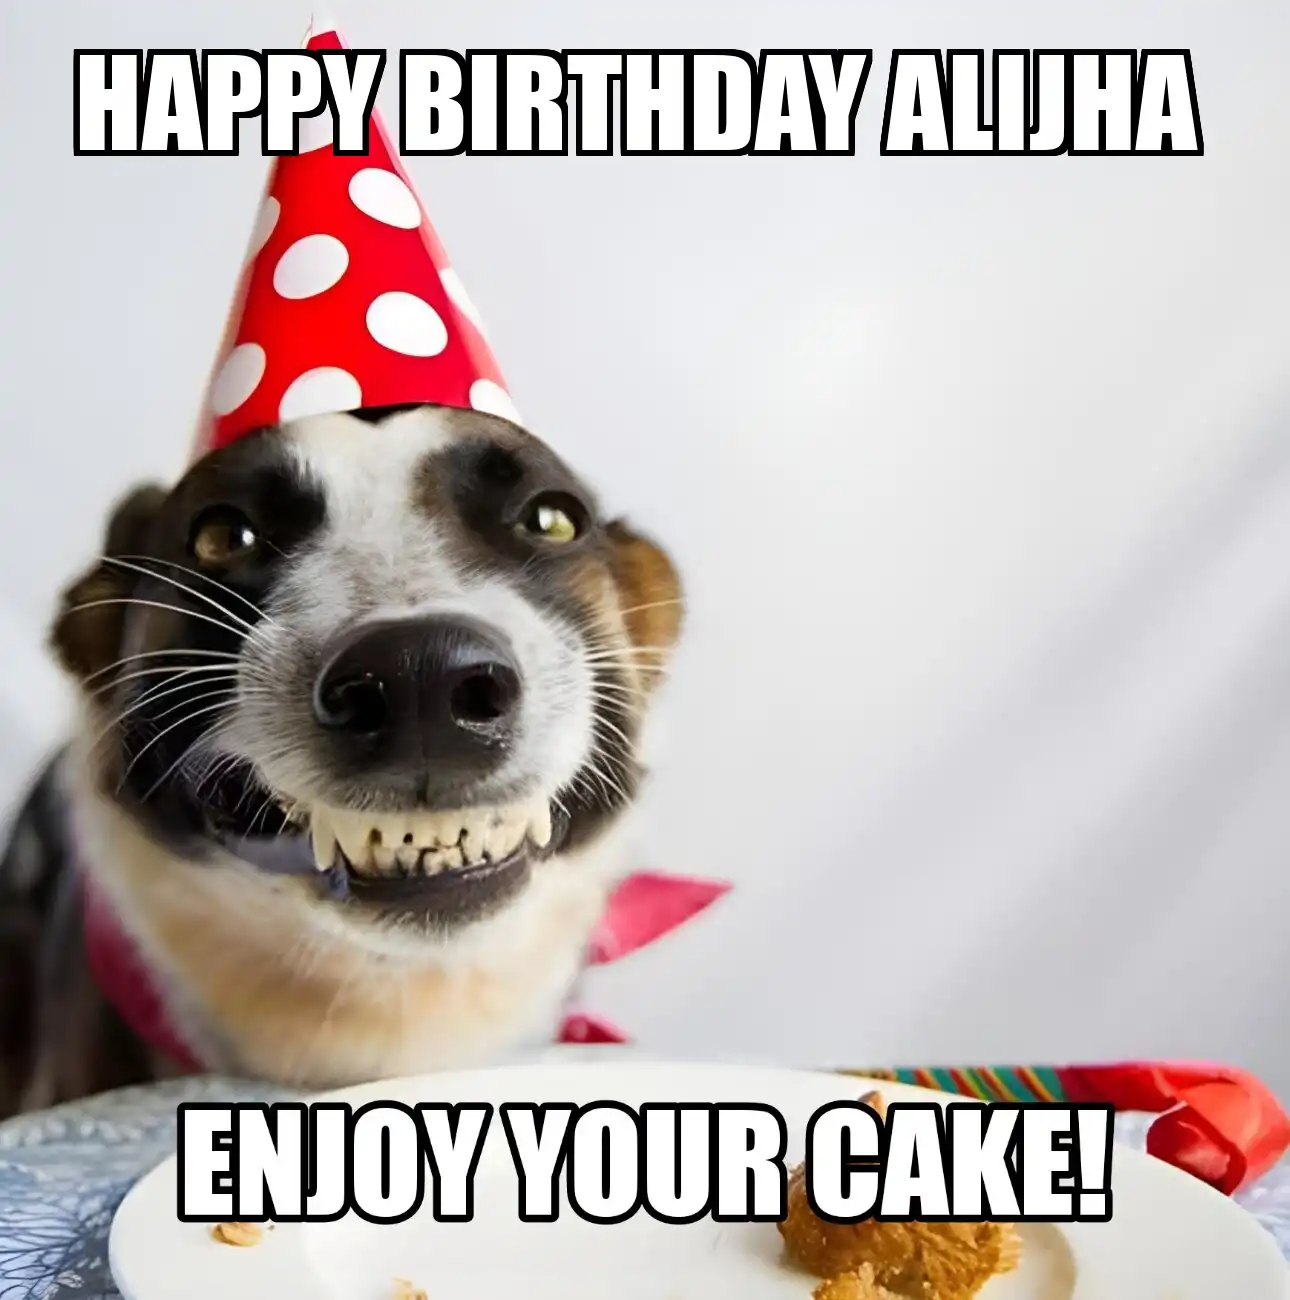 Happy Birthday Alijha Enjoy Your Cake Dog Meme